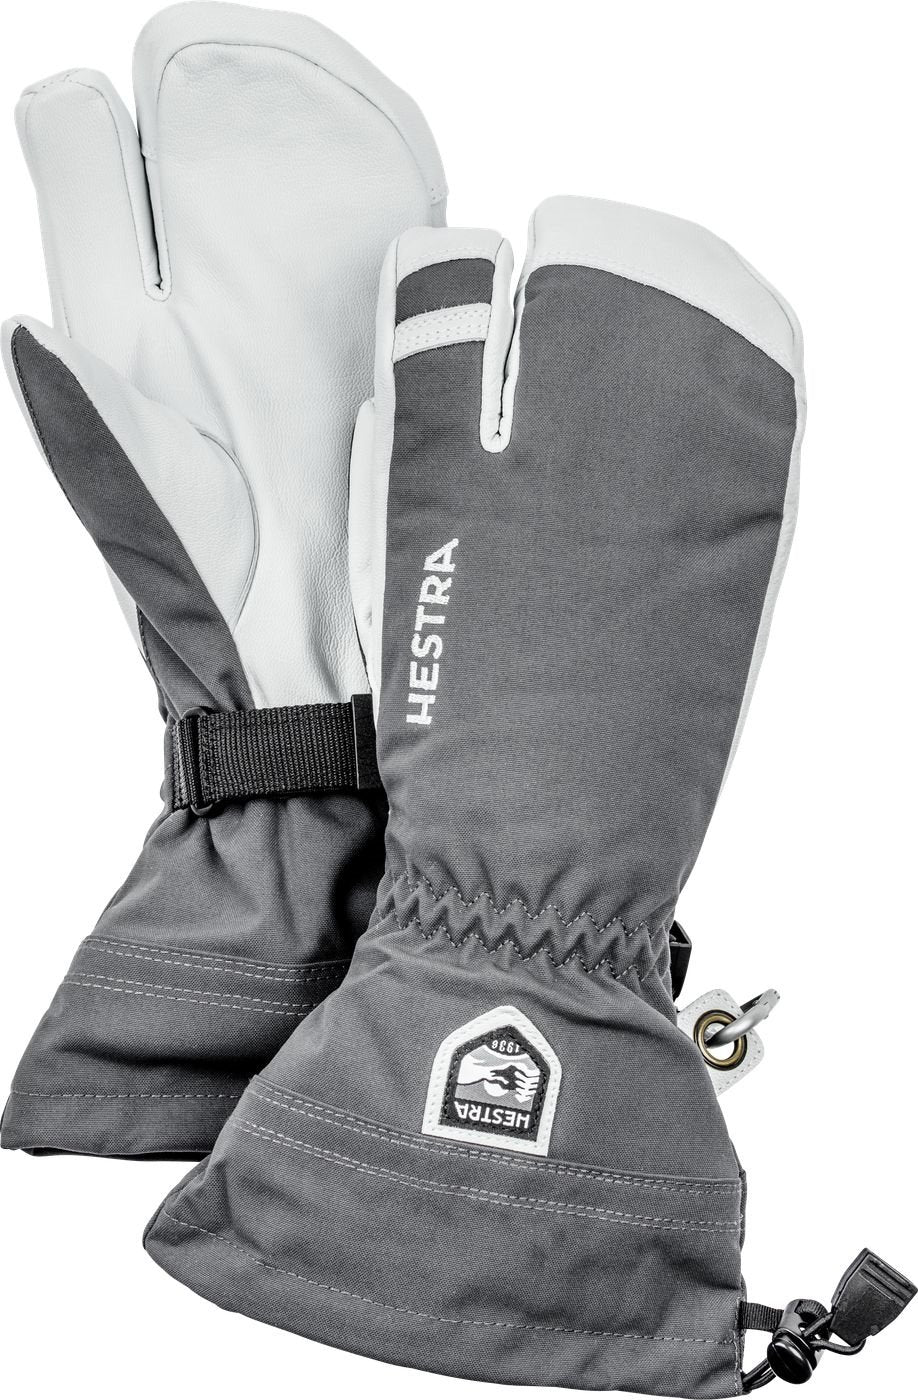 Hestra Heli 3-Finger Glove - Men's – Arlberg Ski & Surf